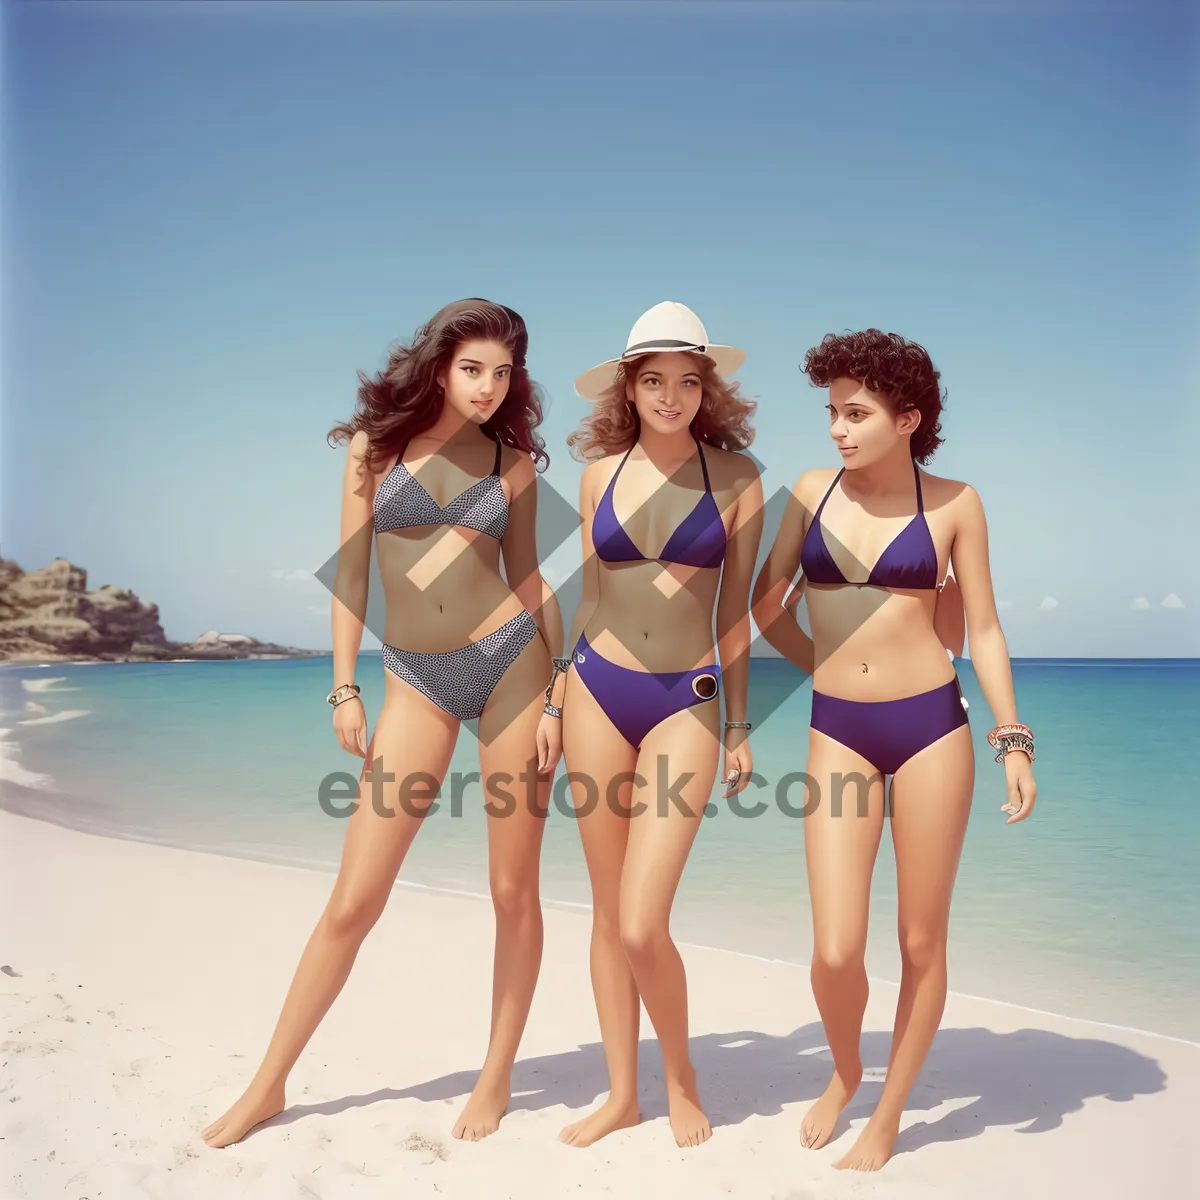 Picture of Sexy Beach Bikini - Summer Fun in the Sun!